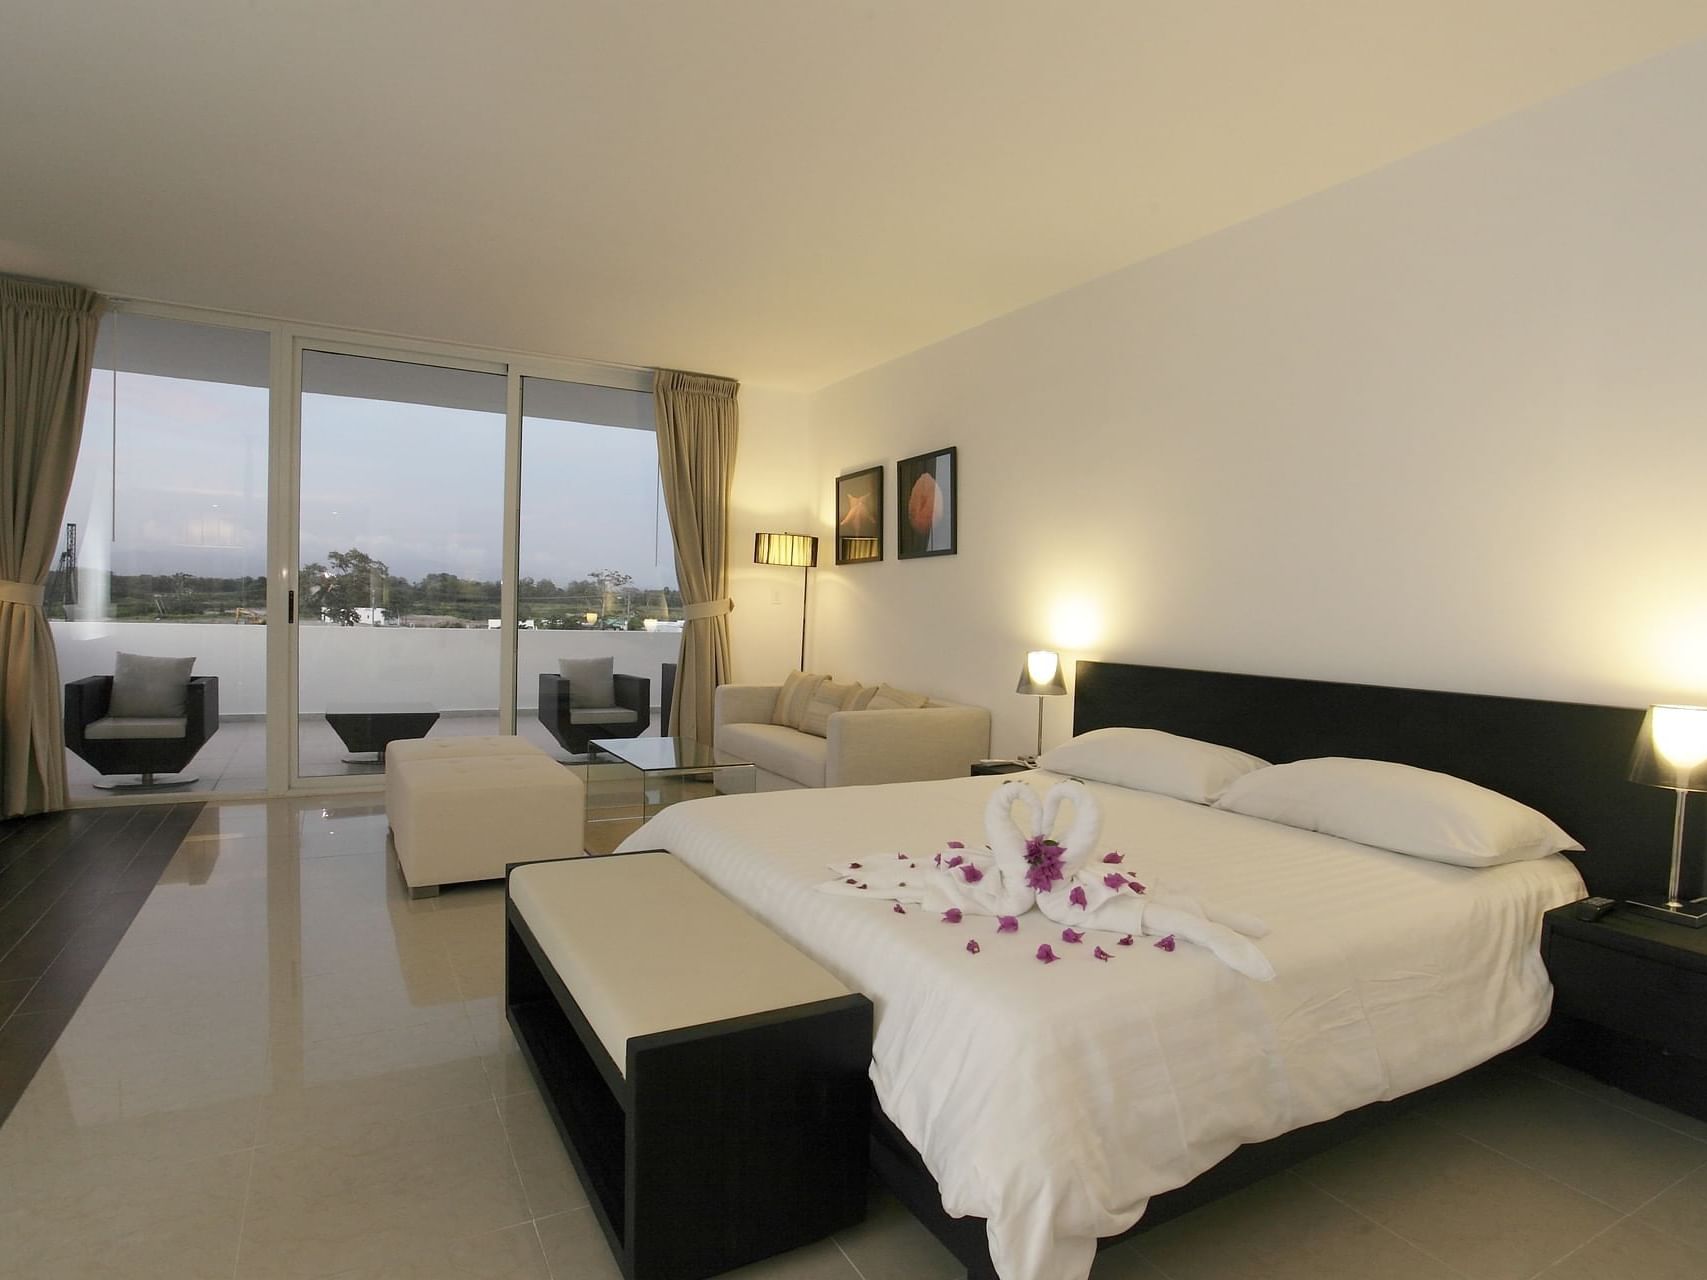 Interior of Luxury Suite at Playa Blanca Beach Resort